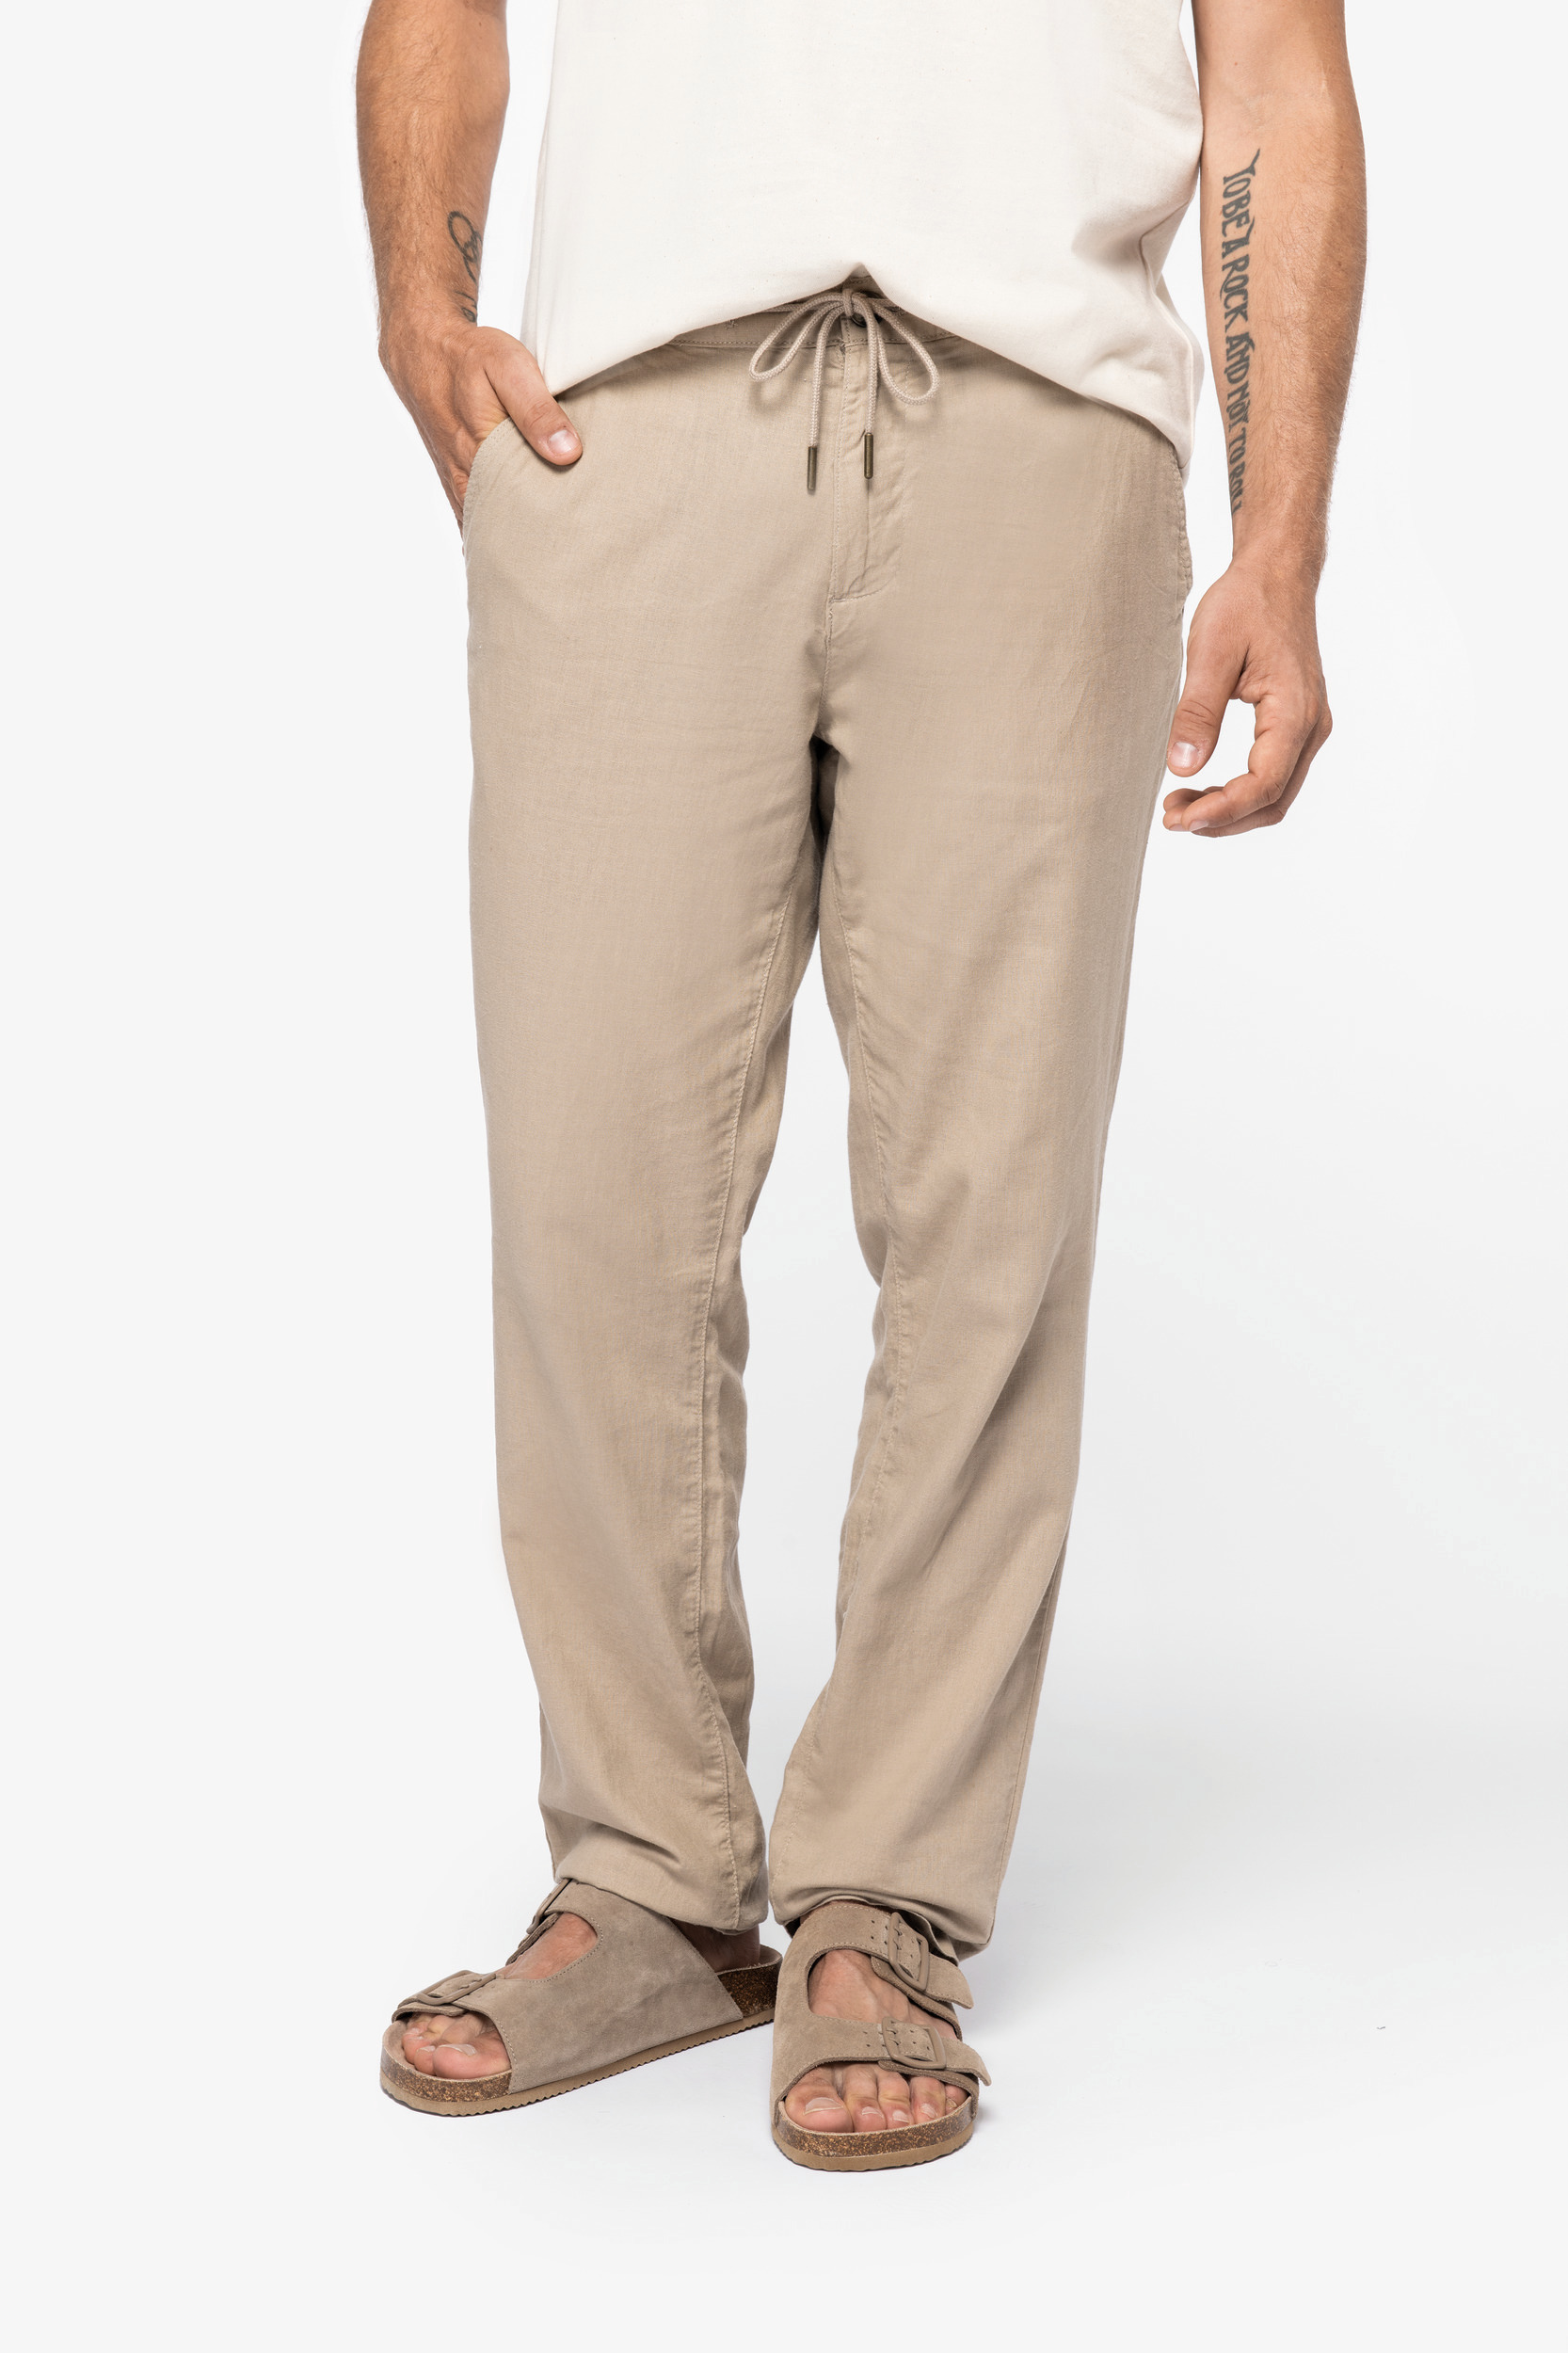 NS708 - Pantalón ecorresponsable lino y algodón orgánico hombre